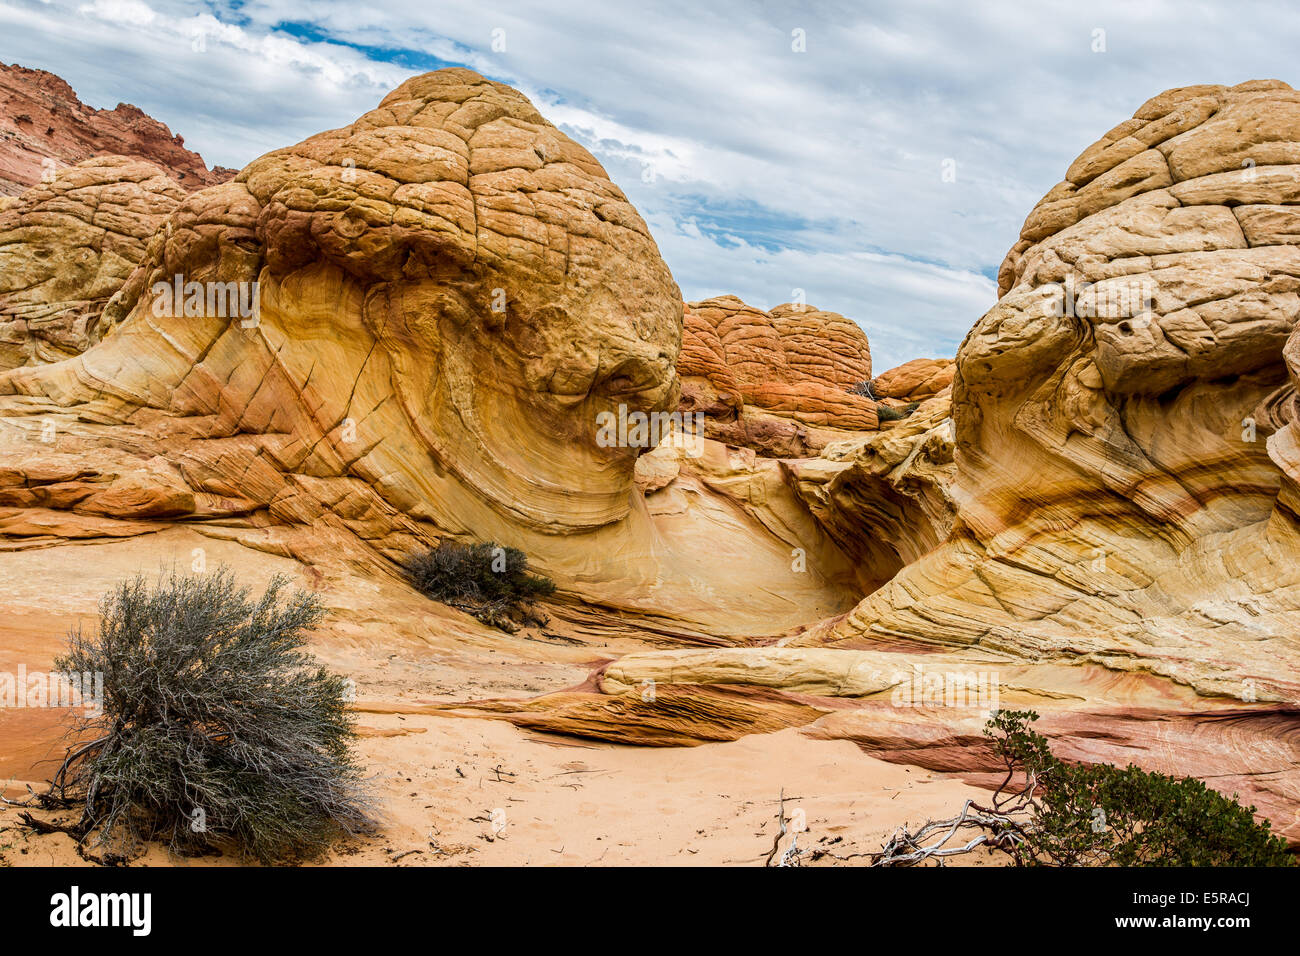 In Arizona. Incredibili formazioni rocciose nel deserto roccioso, Paria Canyon Vermillion Cliffs Wilderness Foto Stock